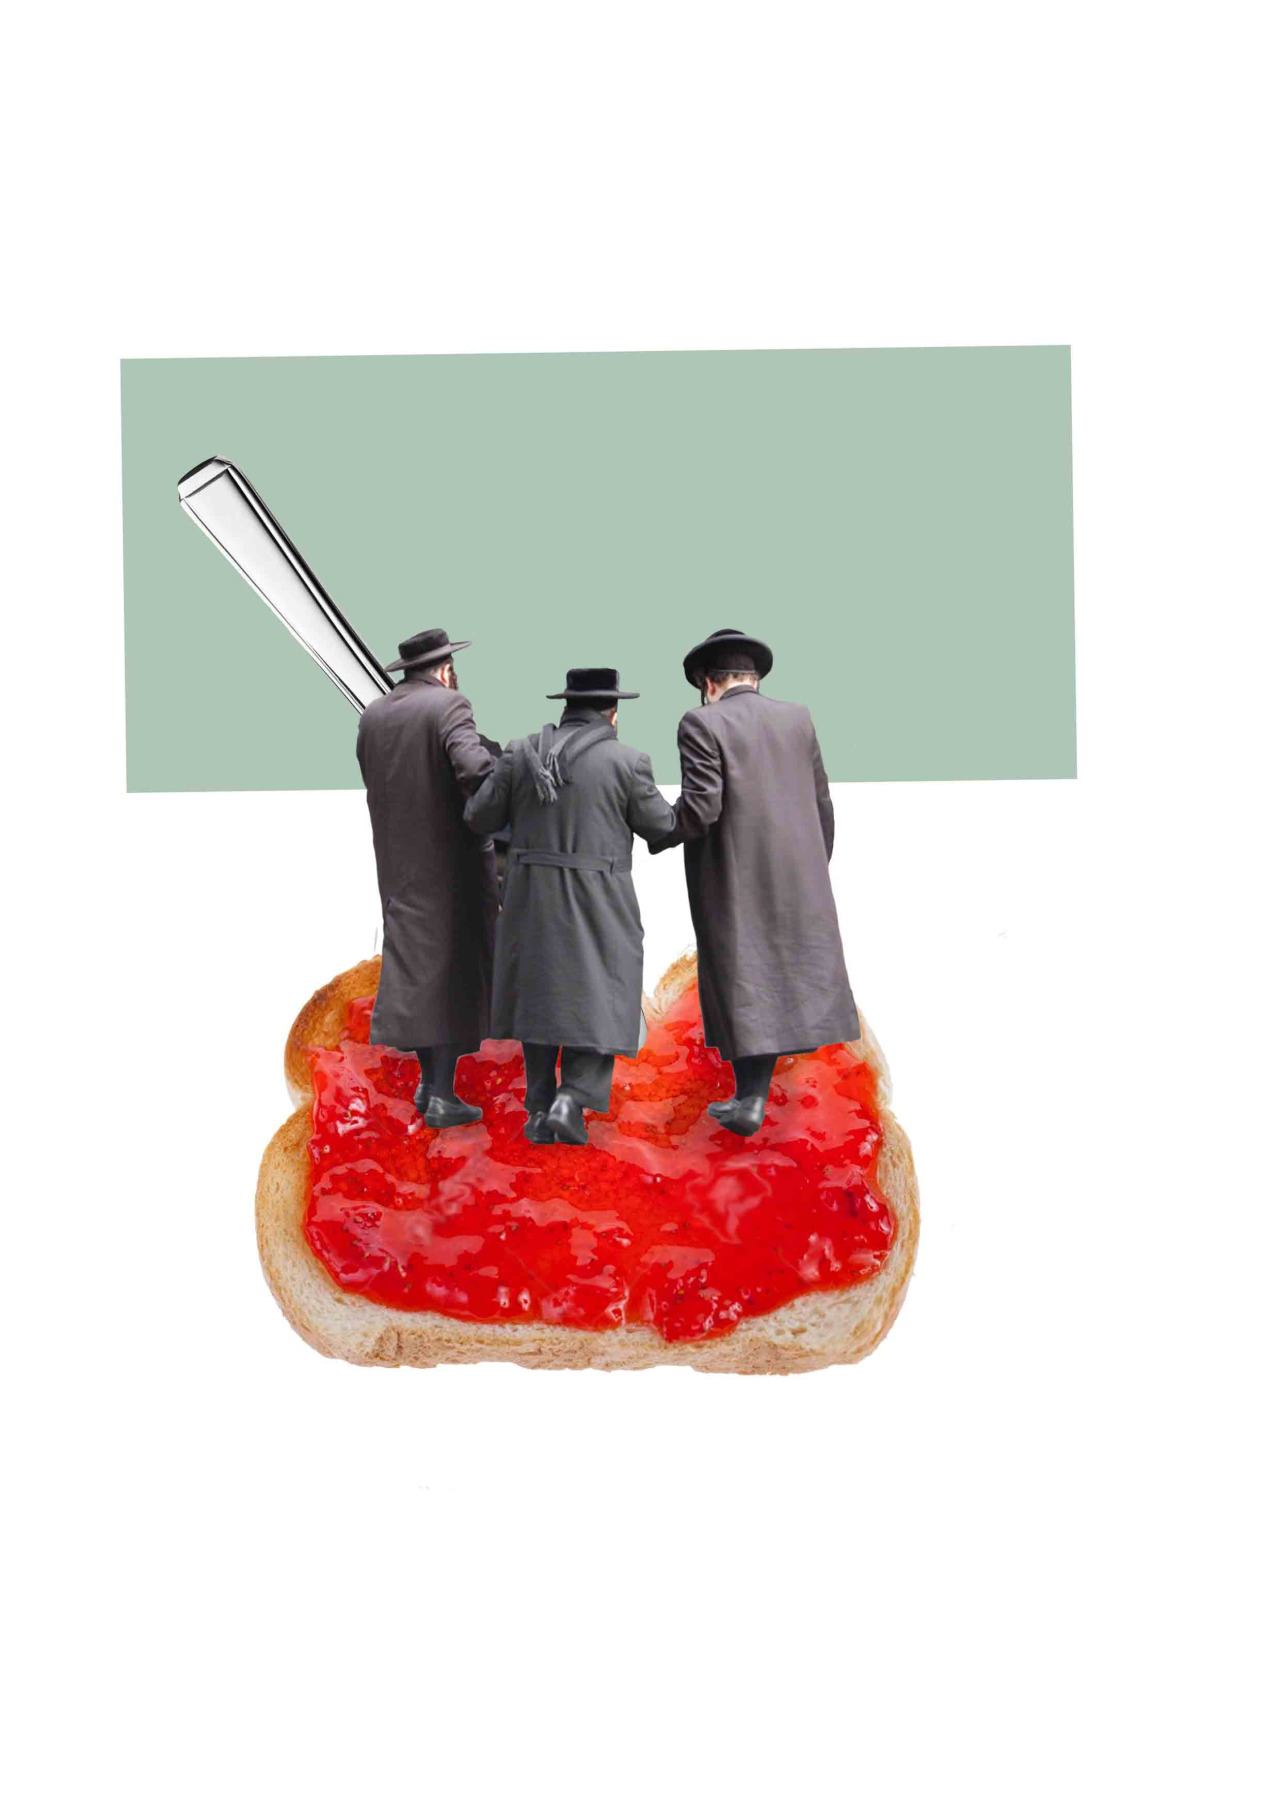 'Three jews on jam on toast' - Chloe Dowsett 04//08//2015